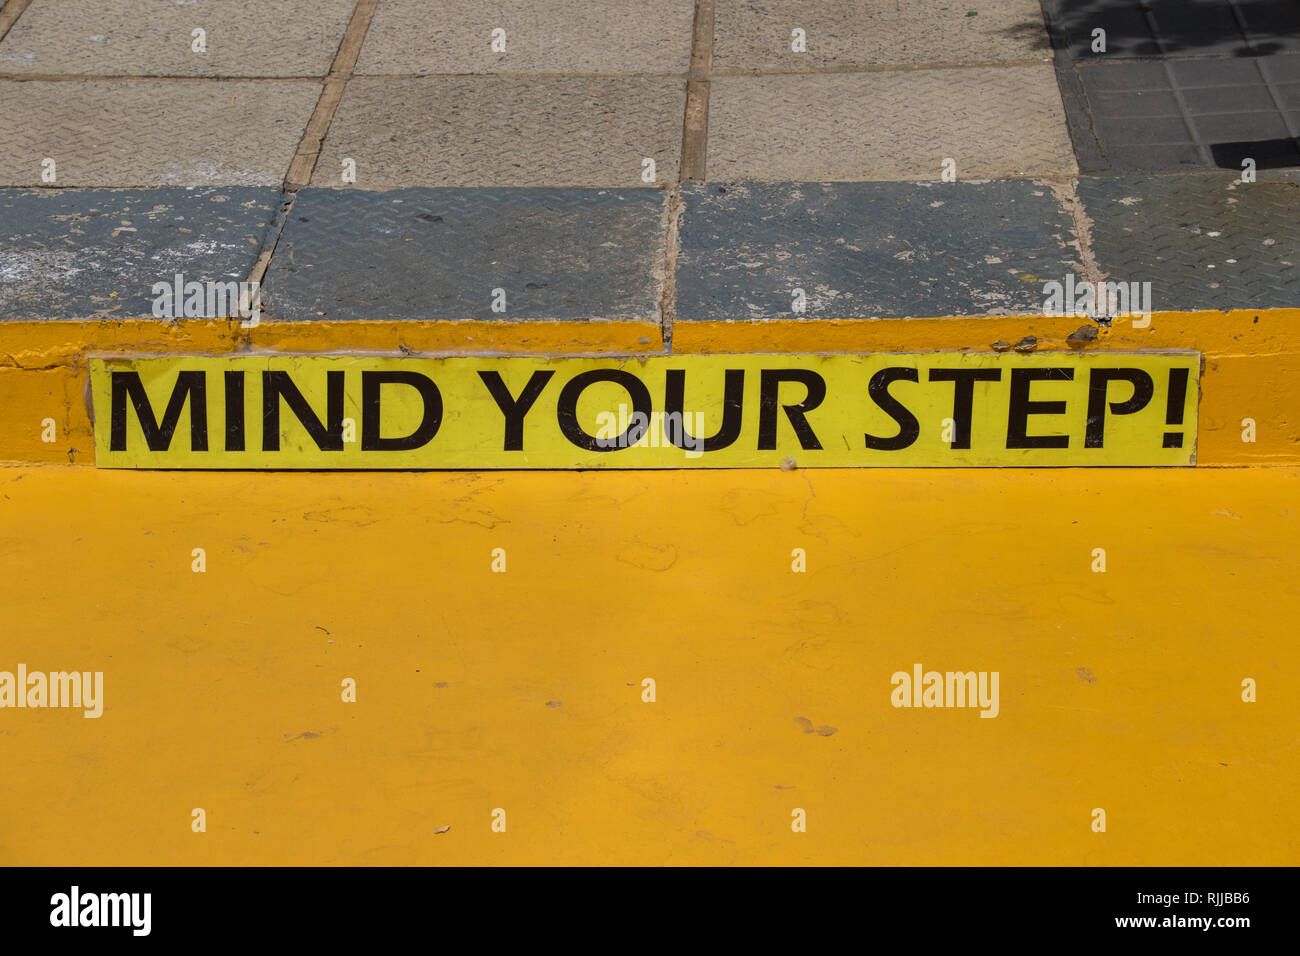 Kümmern sie sich um Ihre schritt Warnschild auf einem Gehsteig in hellem Gelb Bild mit Kopie Raum im Querformat. Stockfoto